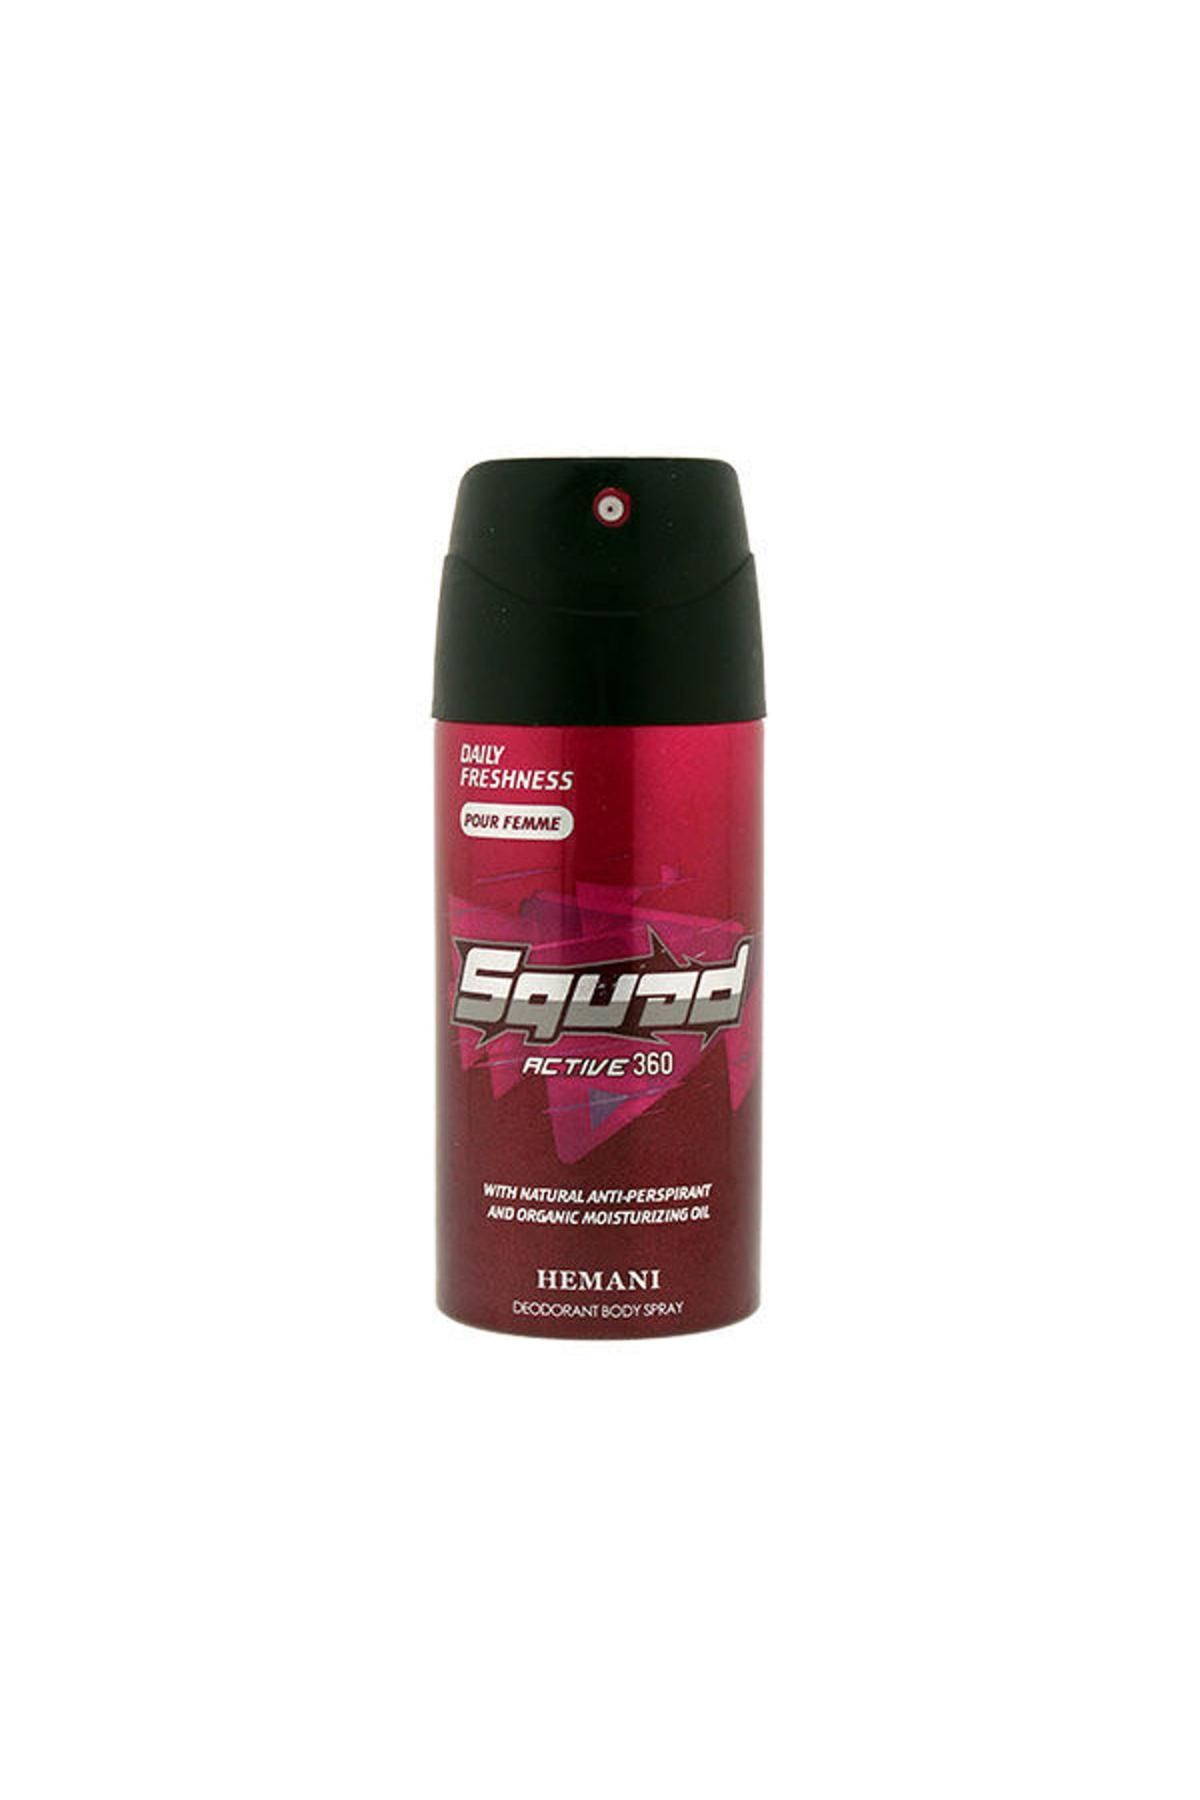 Hemani Squad Deodorant Spray Active 360 for Women